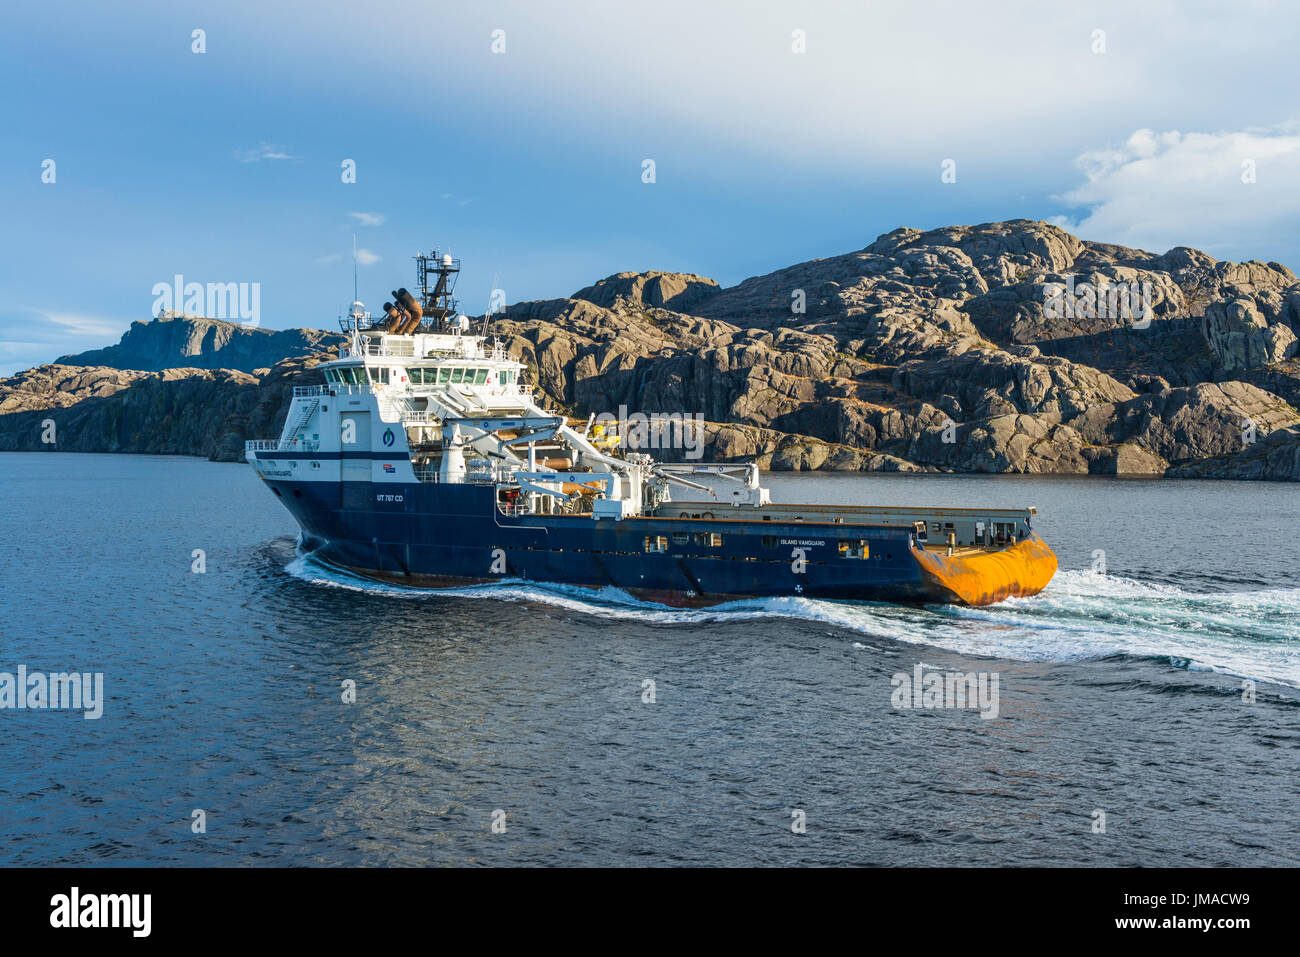 Recipiente di alimentazione "Isola Vanguard' vapori passato norvegese paesaggio costiero, a nord di Bergen, visto da un Hurtigruten Coastal Express la nave di crociera. Foto Stock